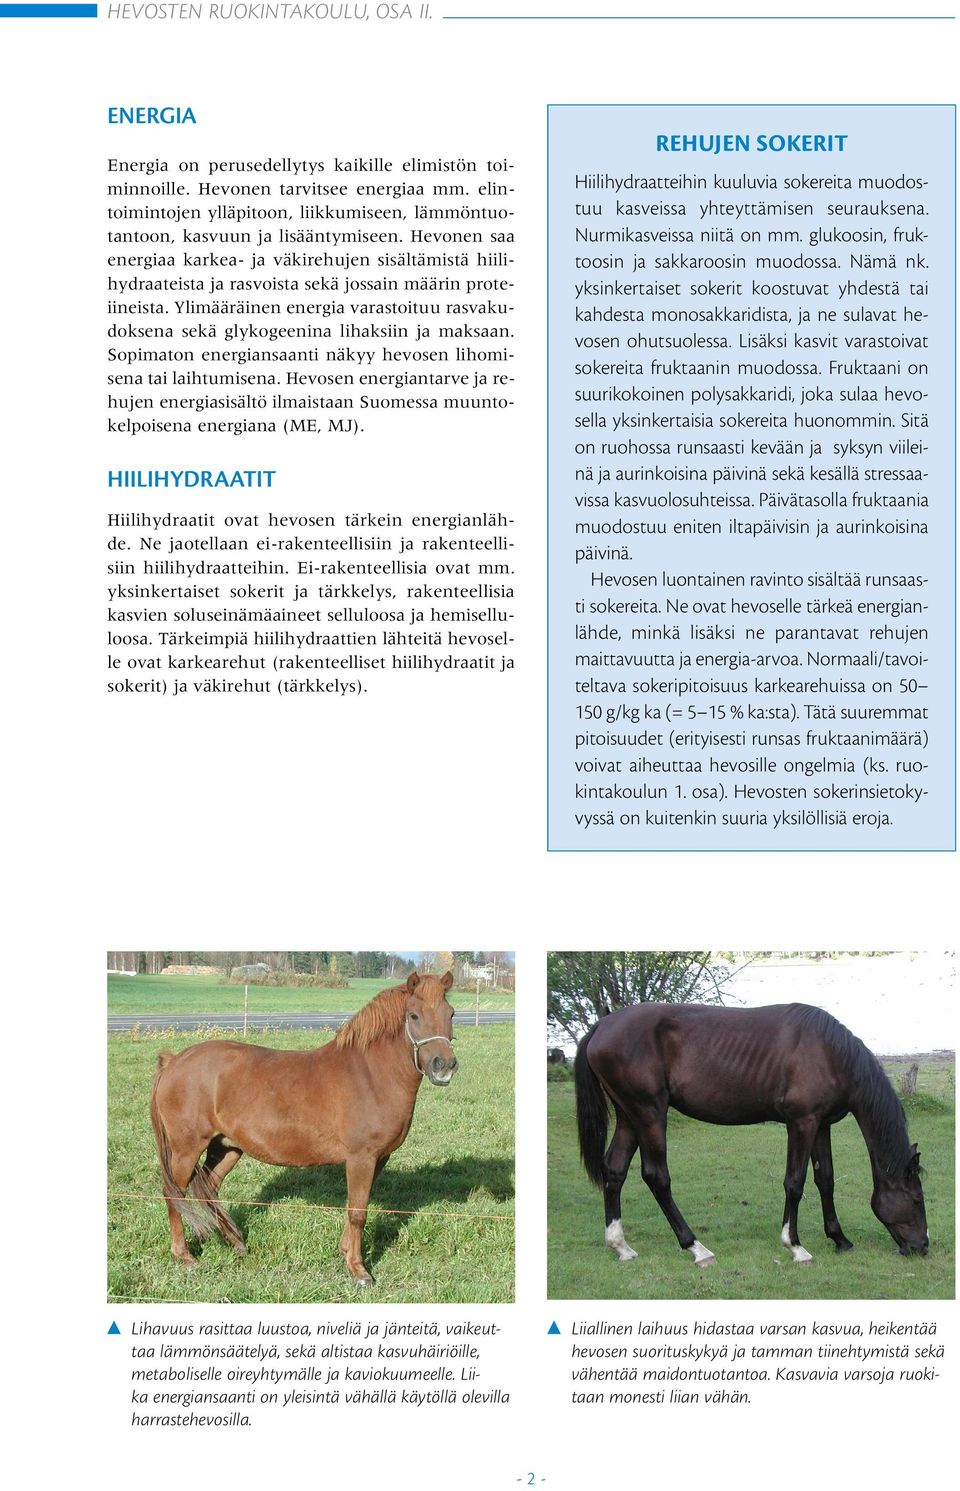 Hevonen saa energiaa karkea- ja väkirehujen sisältämistä hiilihydraateista ja rasvoista sekä jossain määrin proteiineista.